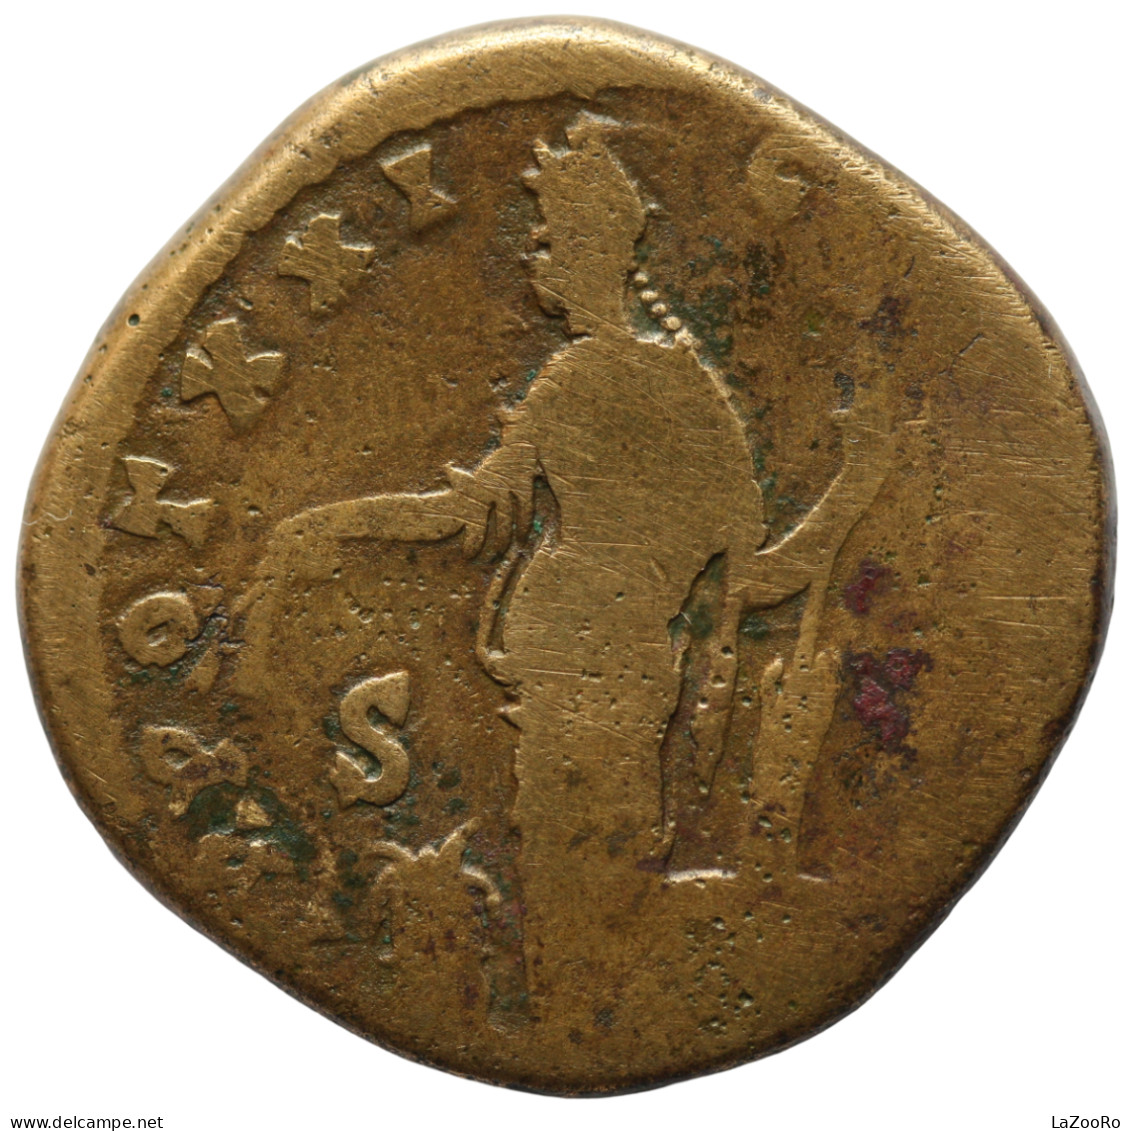 LaZooRo: Roman Empire - AE Sestertius Of Antoninus Pius (138 - 161 AD), Annona - The Anthonines (96 AD Tot 192 AD)